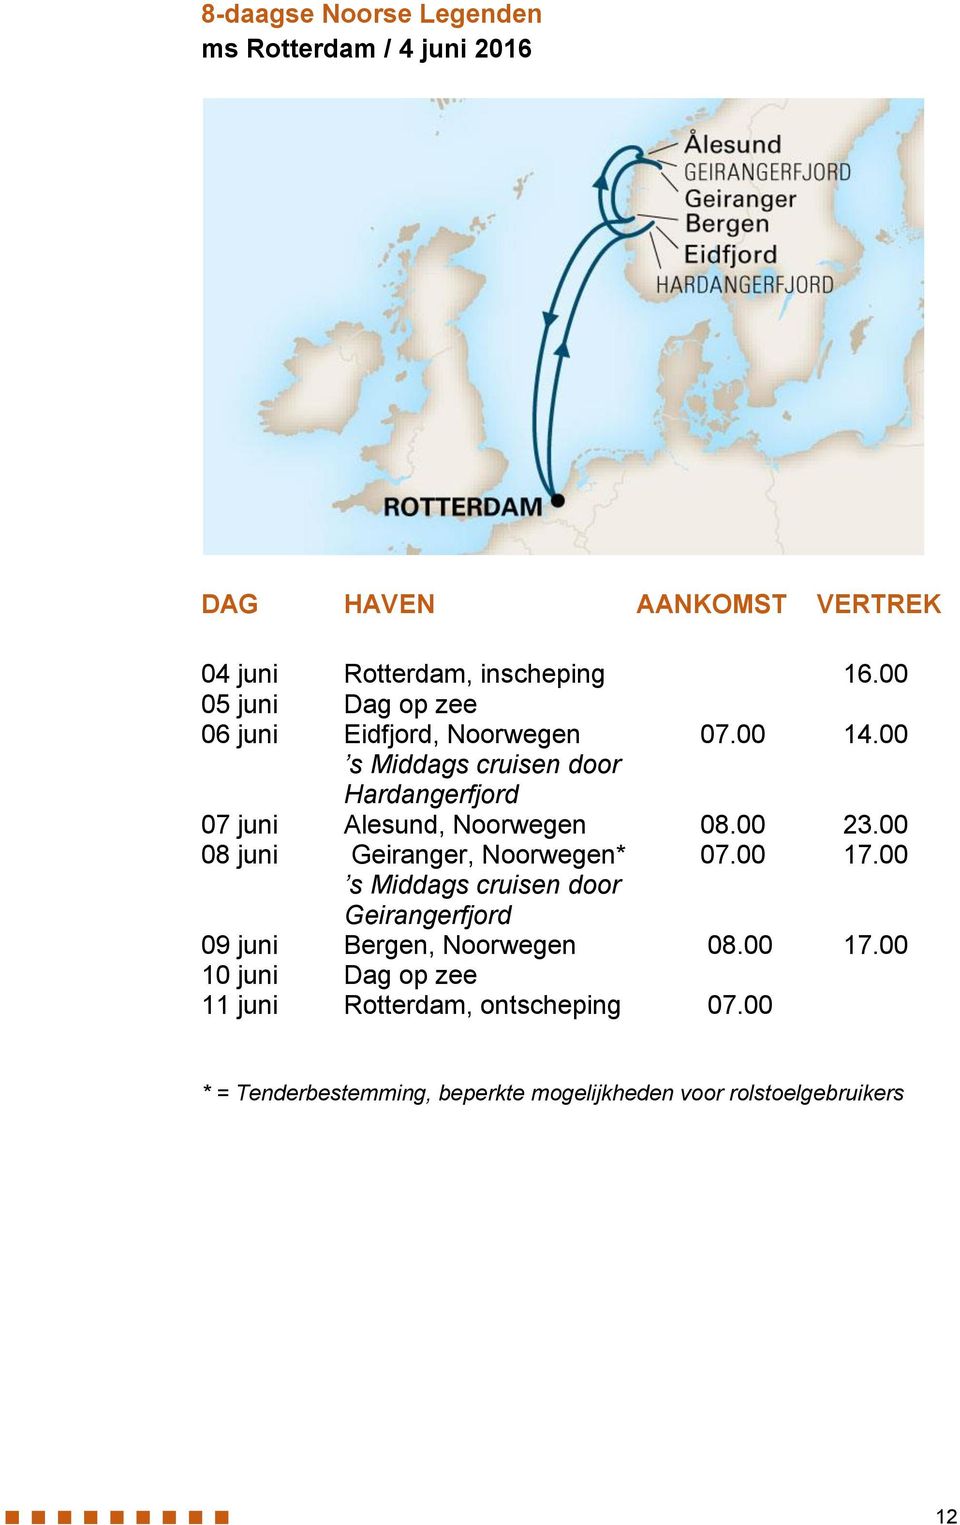 00 s Middags cruisen door Hardangerfjord 07 juni Alesund, Noorwegen 08.00 23.00 08 juni Geiranger, Noorwegen* 07.00 17.